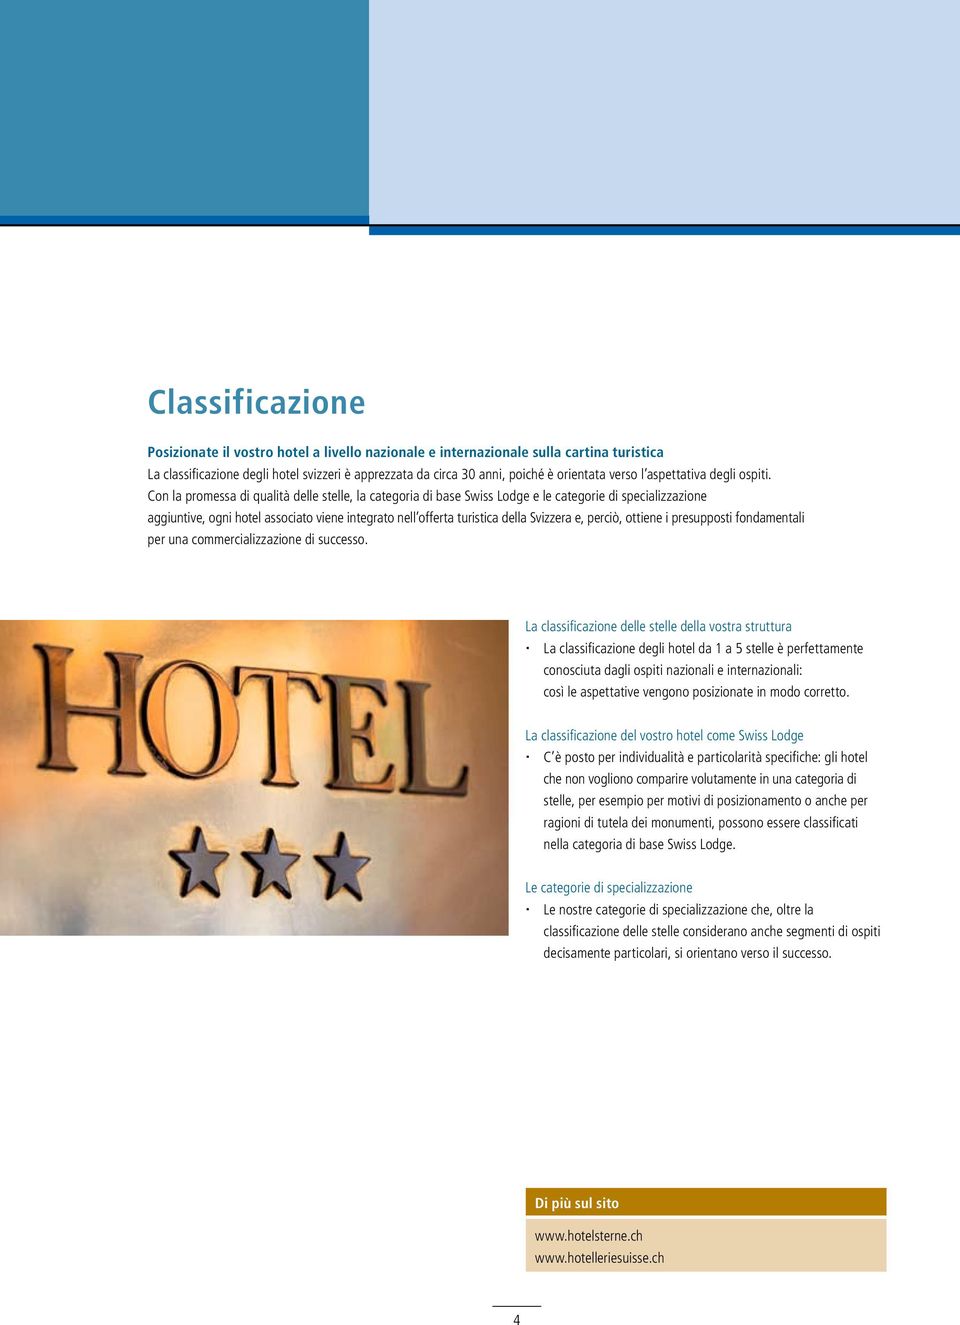 Con la promessa di qualità delle stelle, la categoria di base Swiss Lodge e le categorie di specializzazione aggiuntive, ogni hotel associato viene integrato nell offerta turistica della Svizzera e,